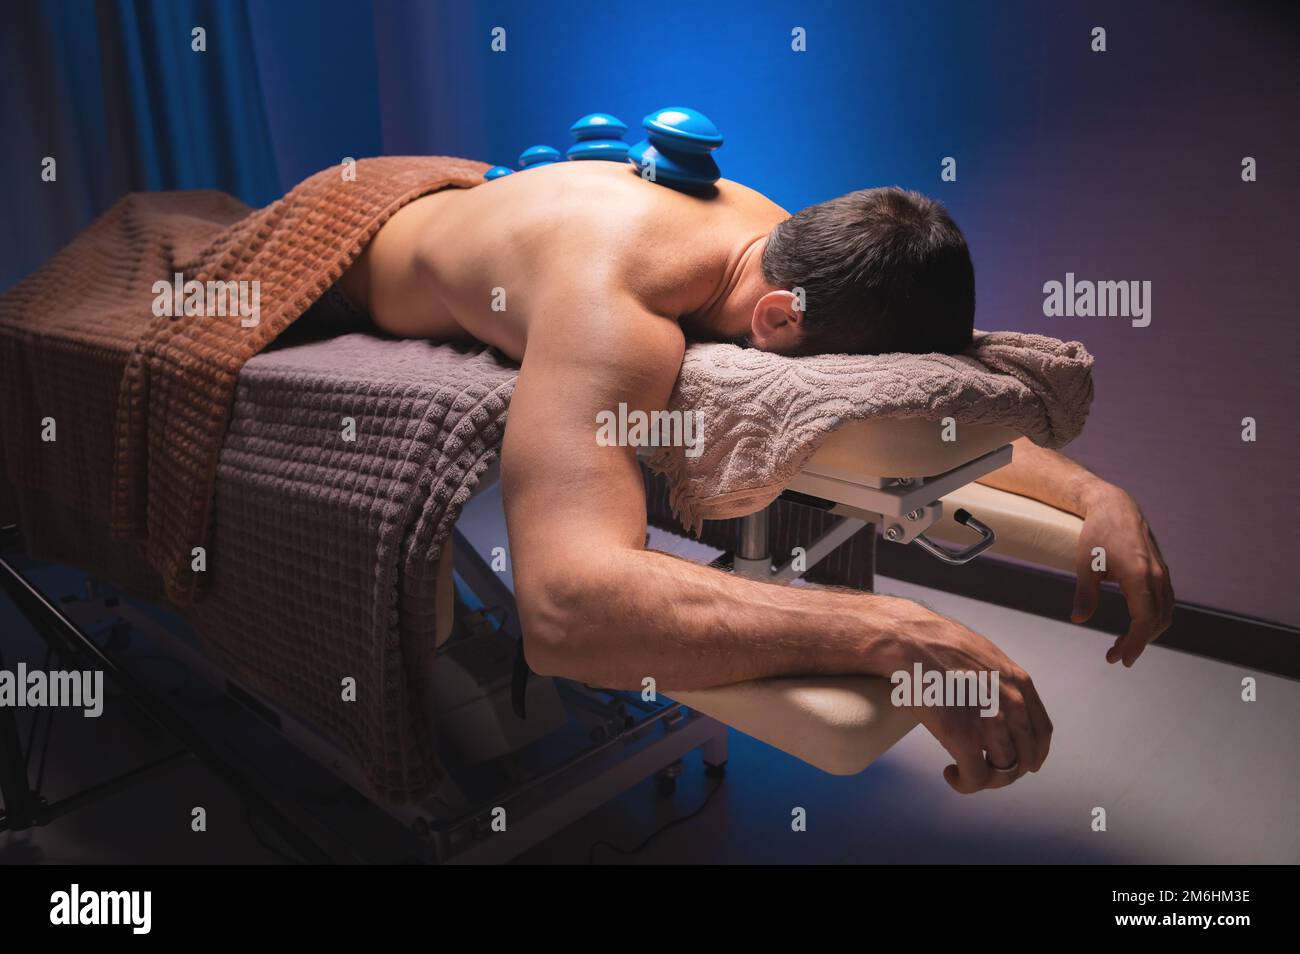 Mann, der sich hinlegt, erholt sich mit Vakuumbechern gesund. Nahaufnahme von Vakuumbechern auf der Rückseite eines Mannes vor einem schwarz-blauen Hintergrund. Stockfoto